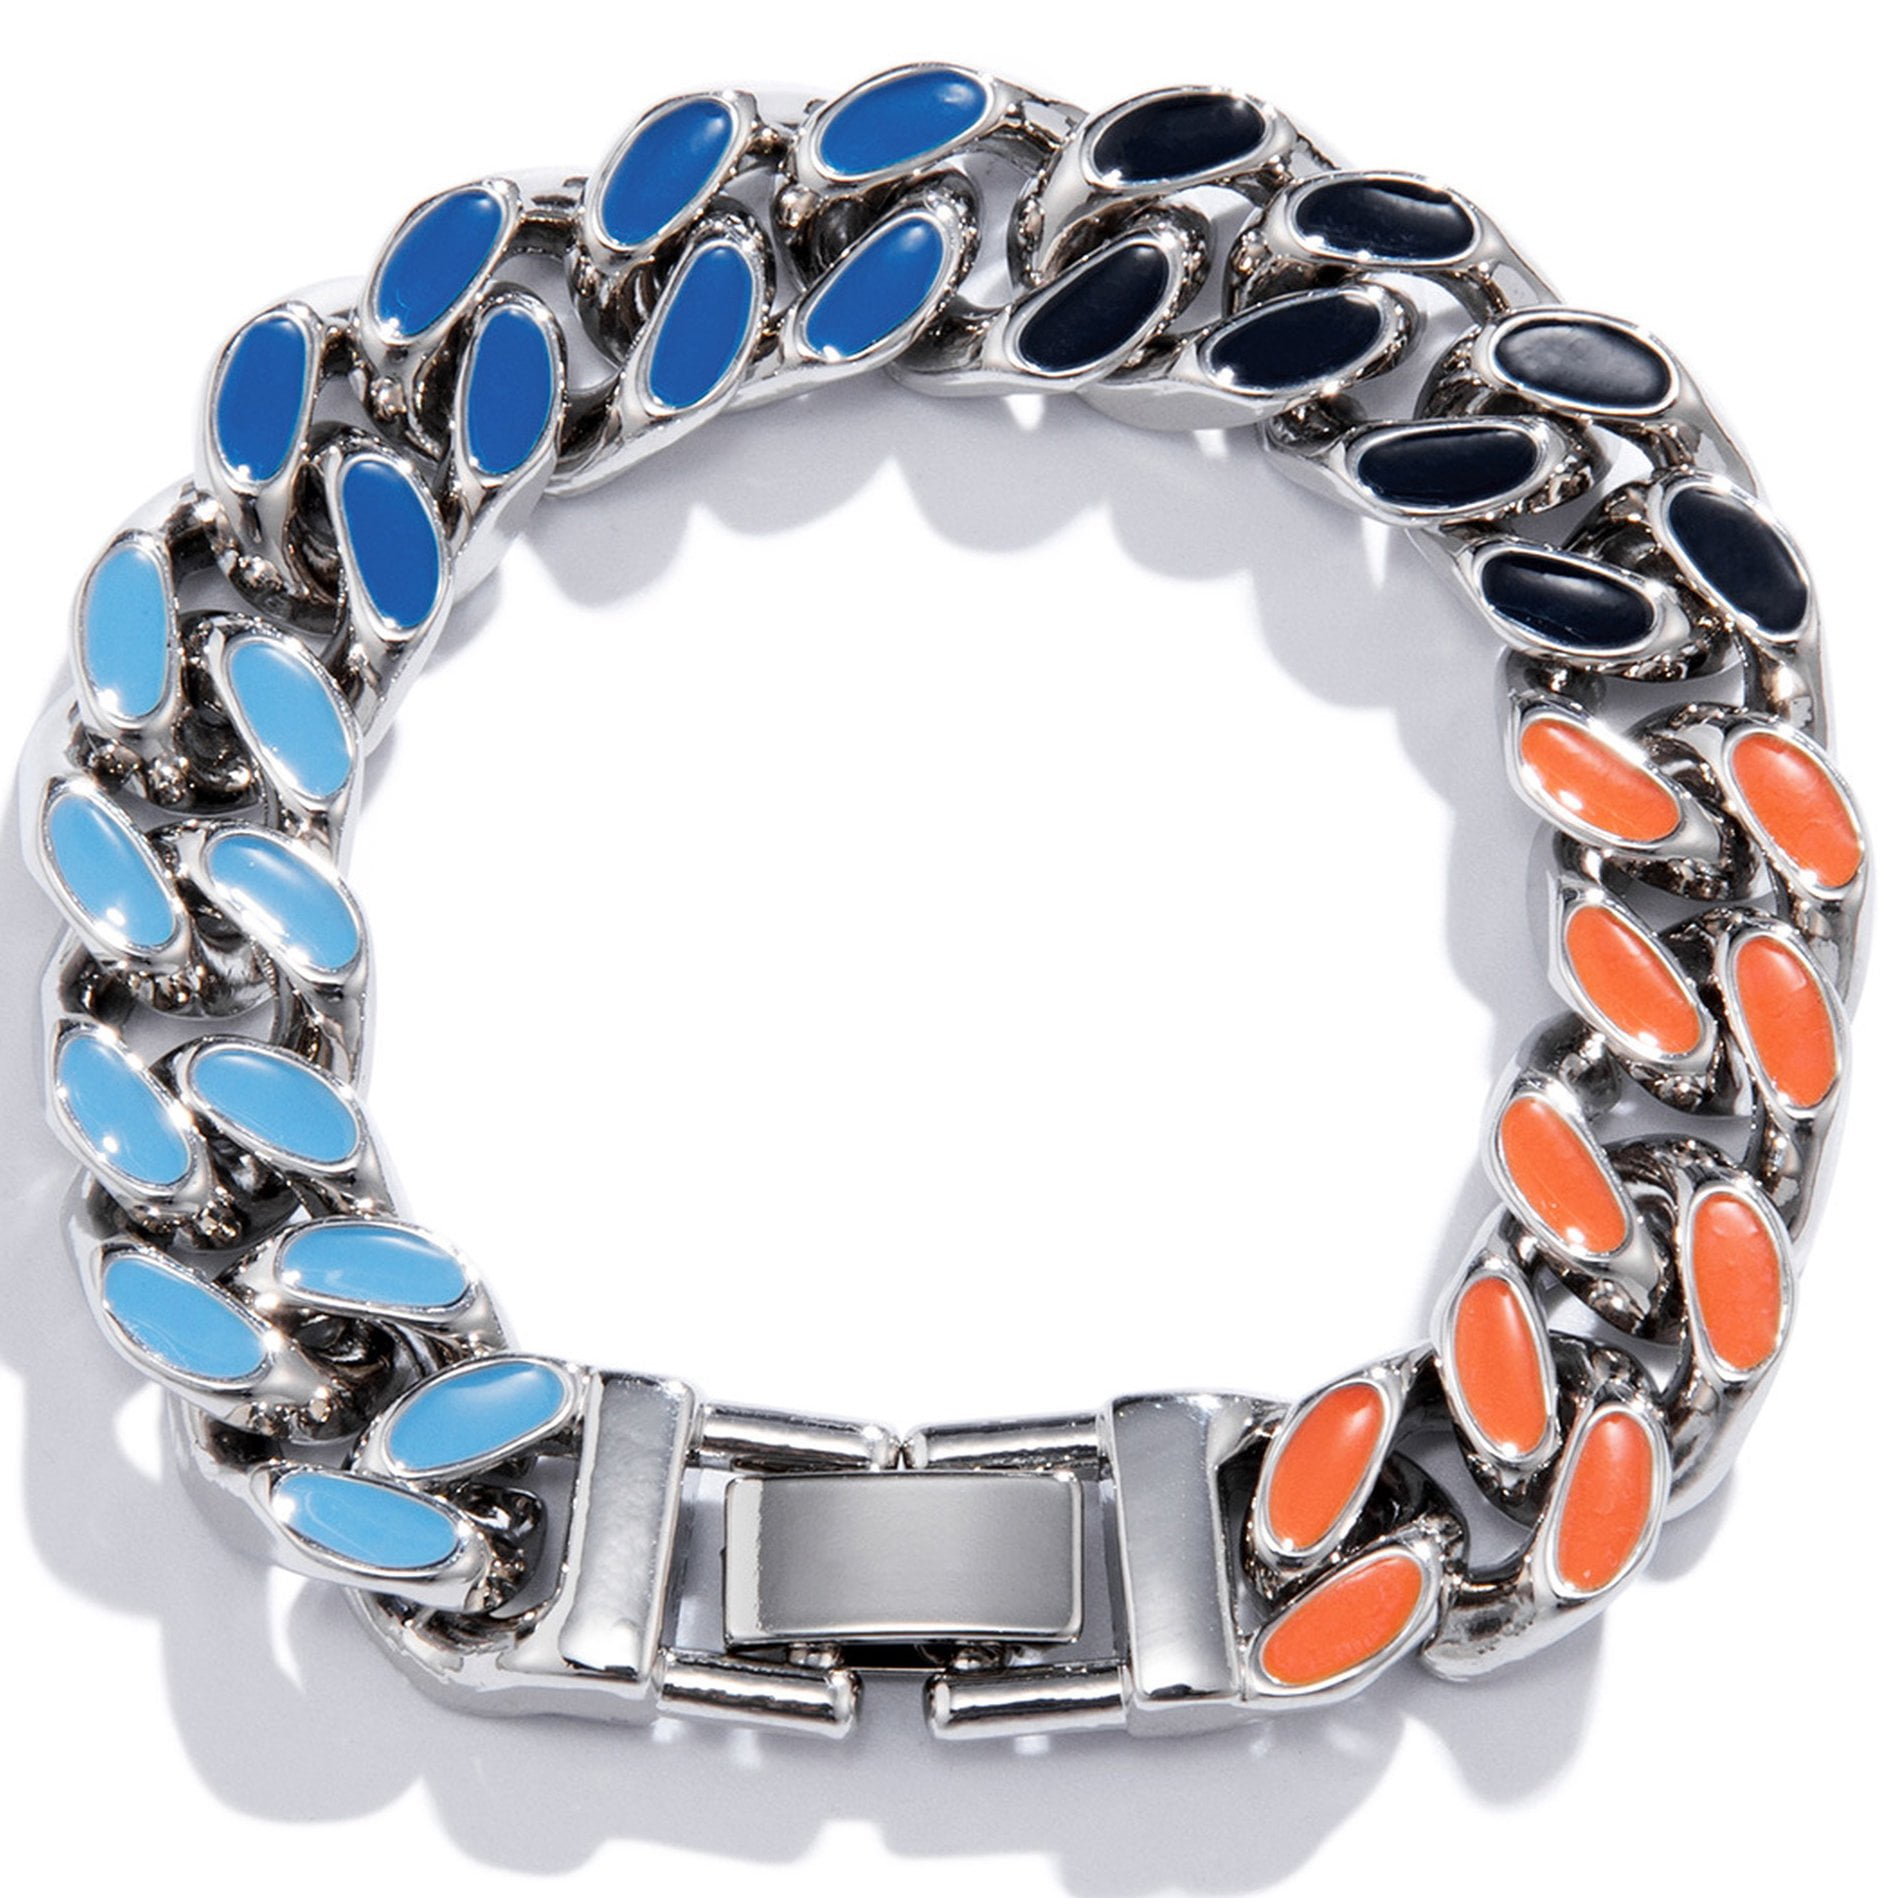 Louis Vuitton Chain Links Patches Bracelet Multicolor for Men